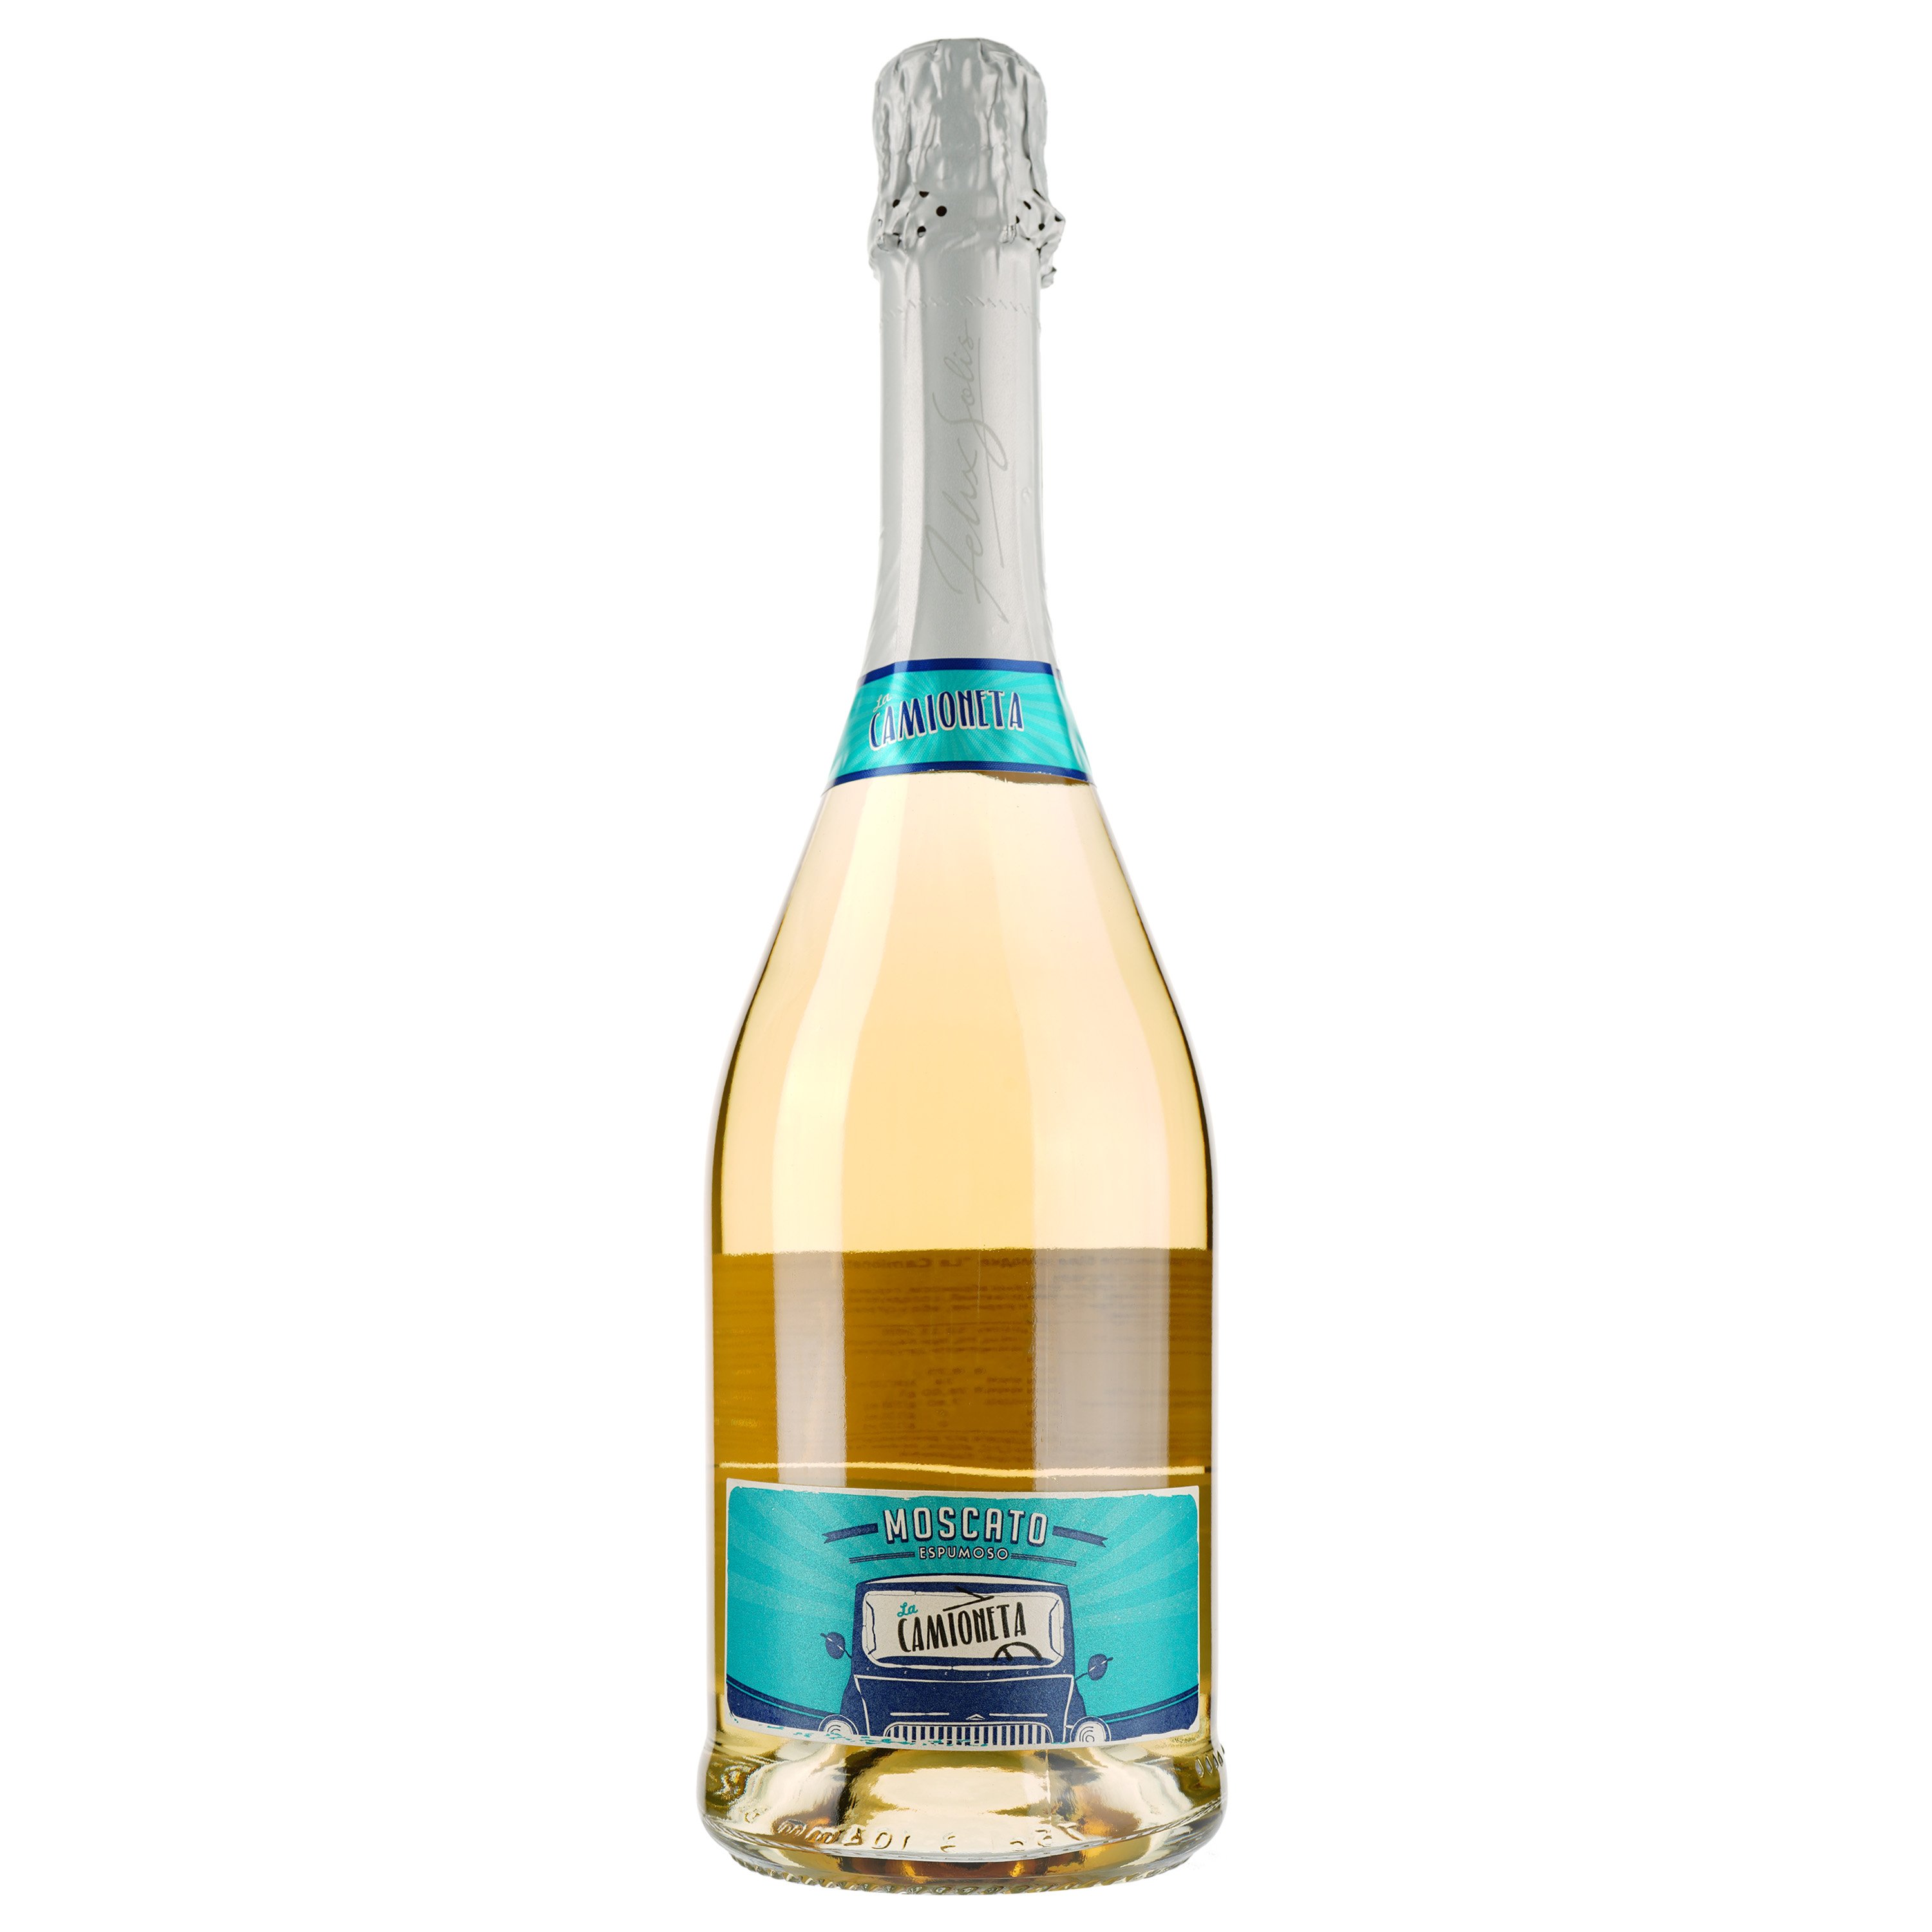 Игристое вино Felix Solis Avantis La Camioneta Moscato, белое, сладкое, 7%, 0,75 л - фото 1